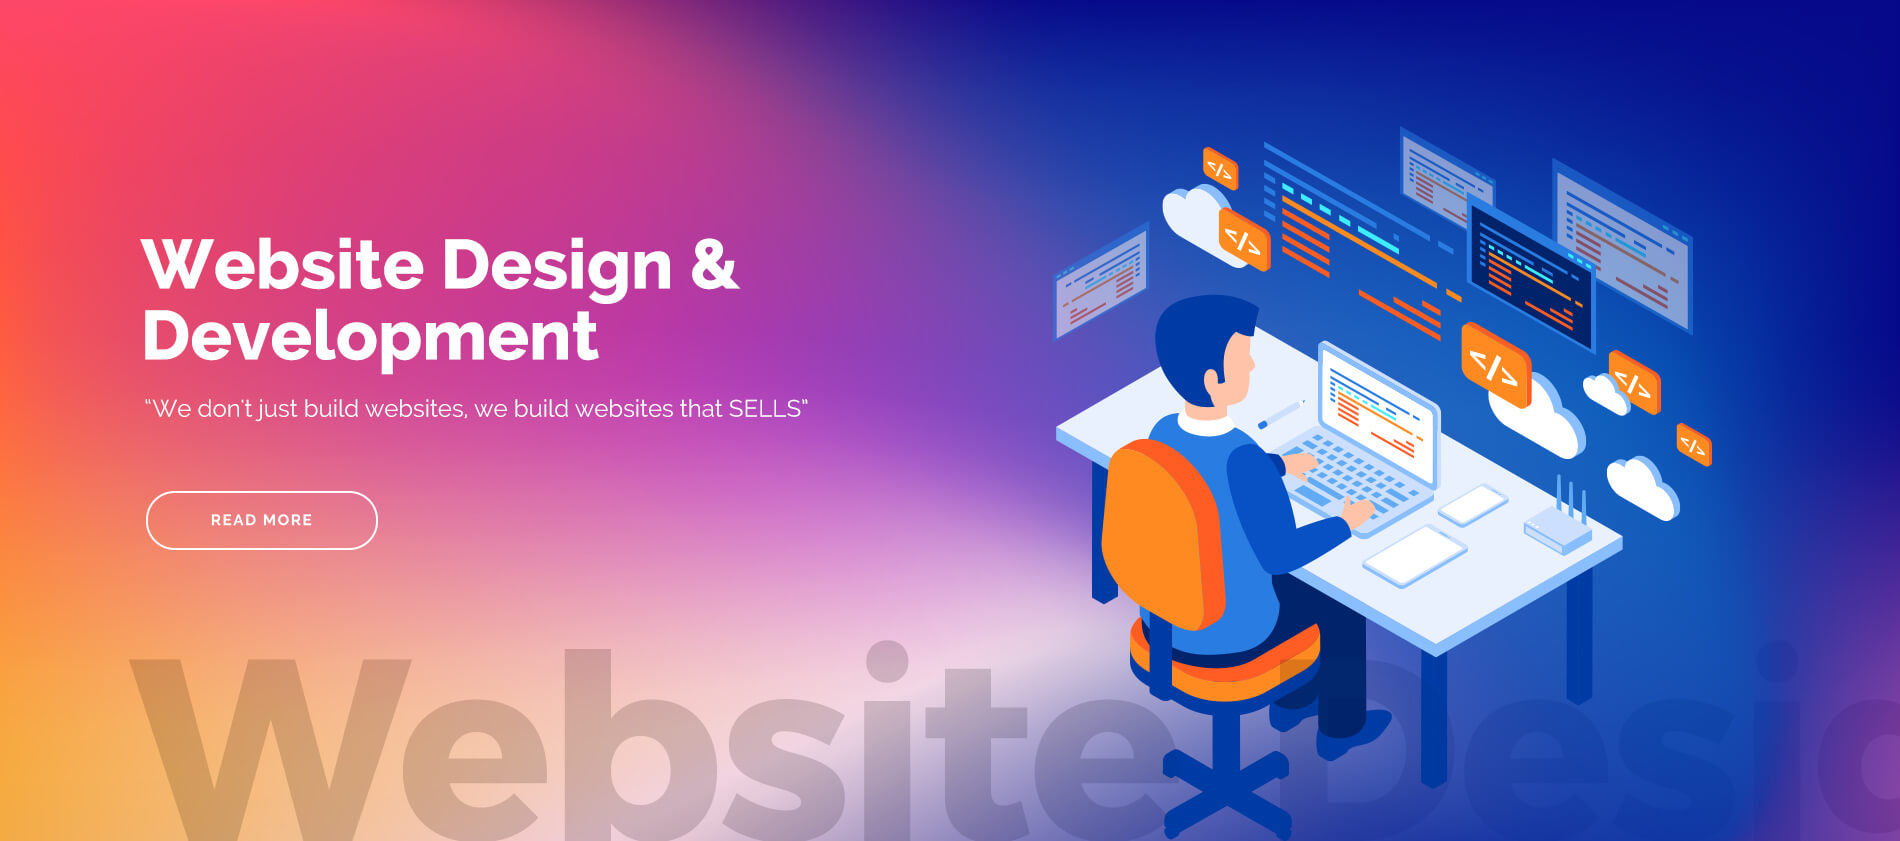 Web-site-design-&-development